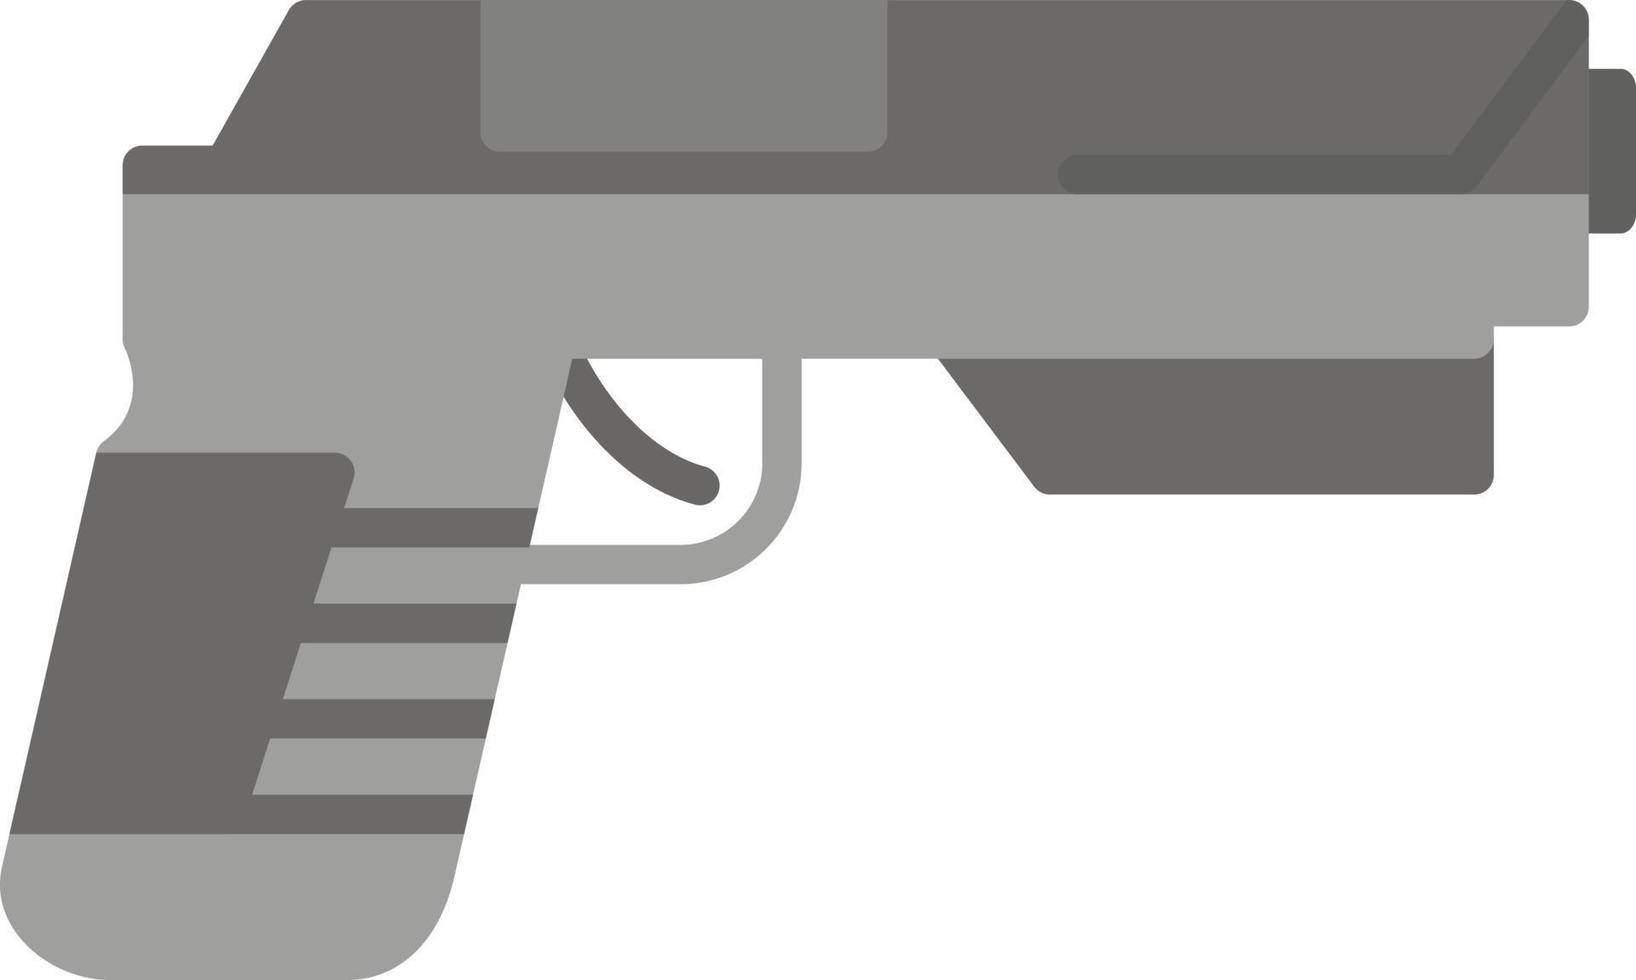 icône plate de pistolet vecteur